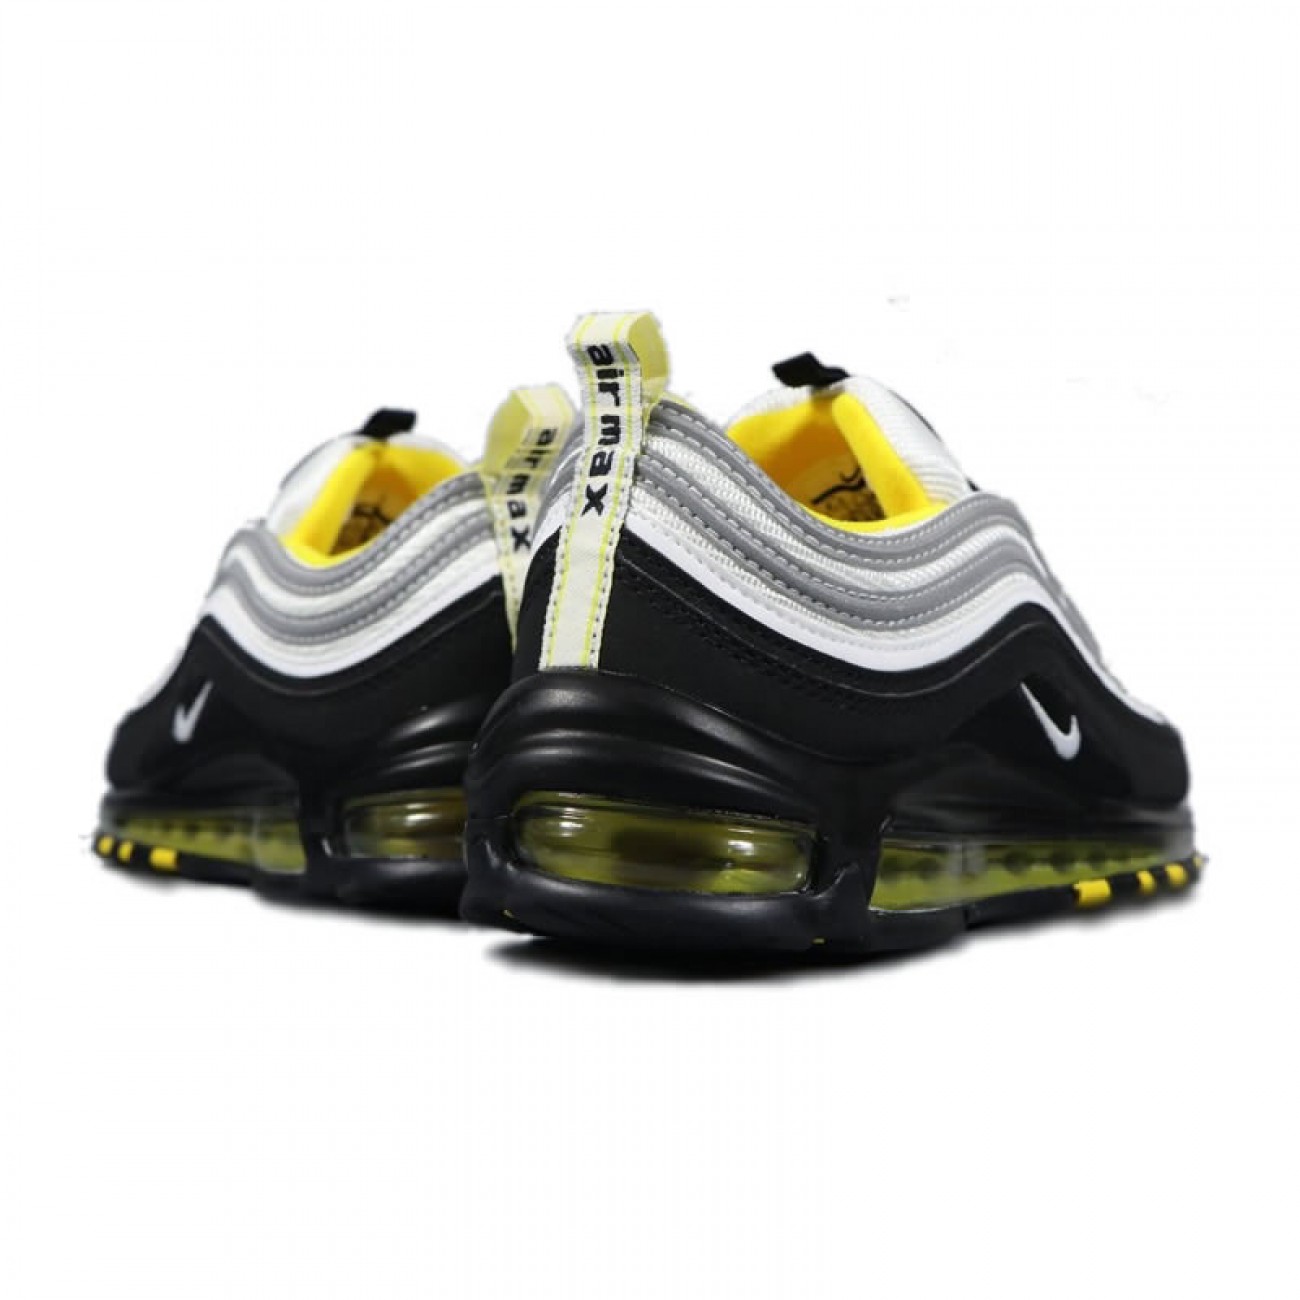 Nike Air Max 97 Amarillo Black/White/Yellow 921522-005